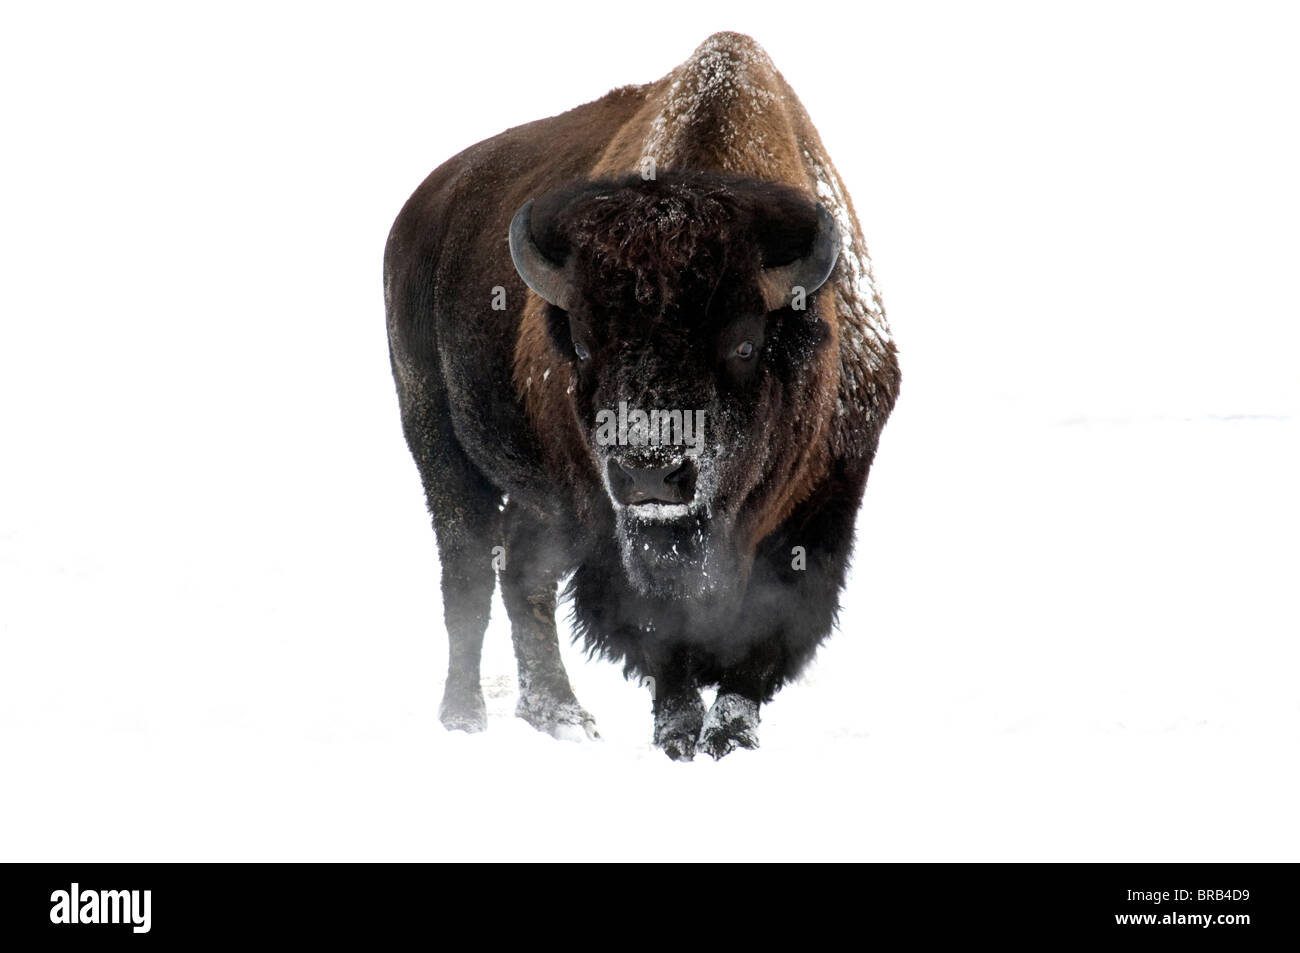 Bison-Alaska wildlife conservation center-hiver-2008 Banque D'Images